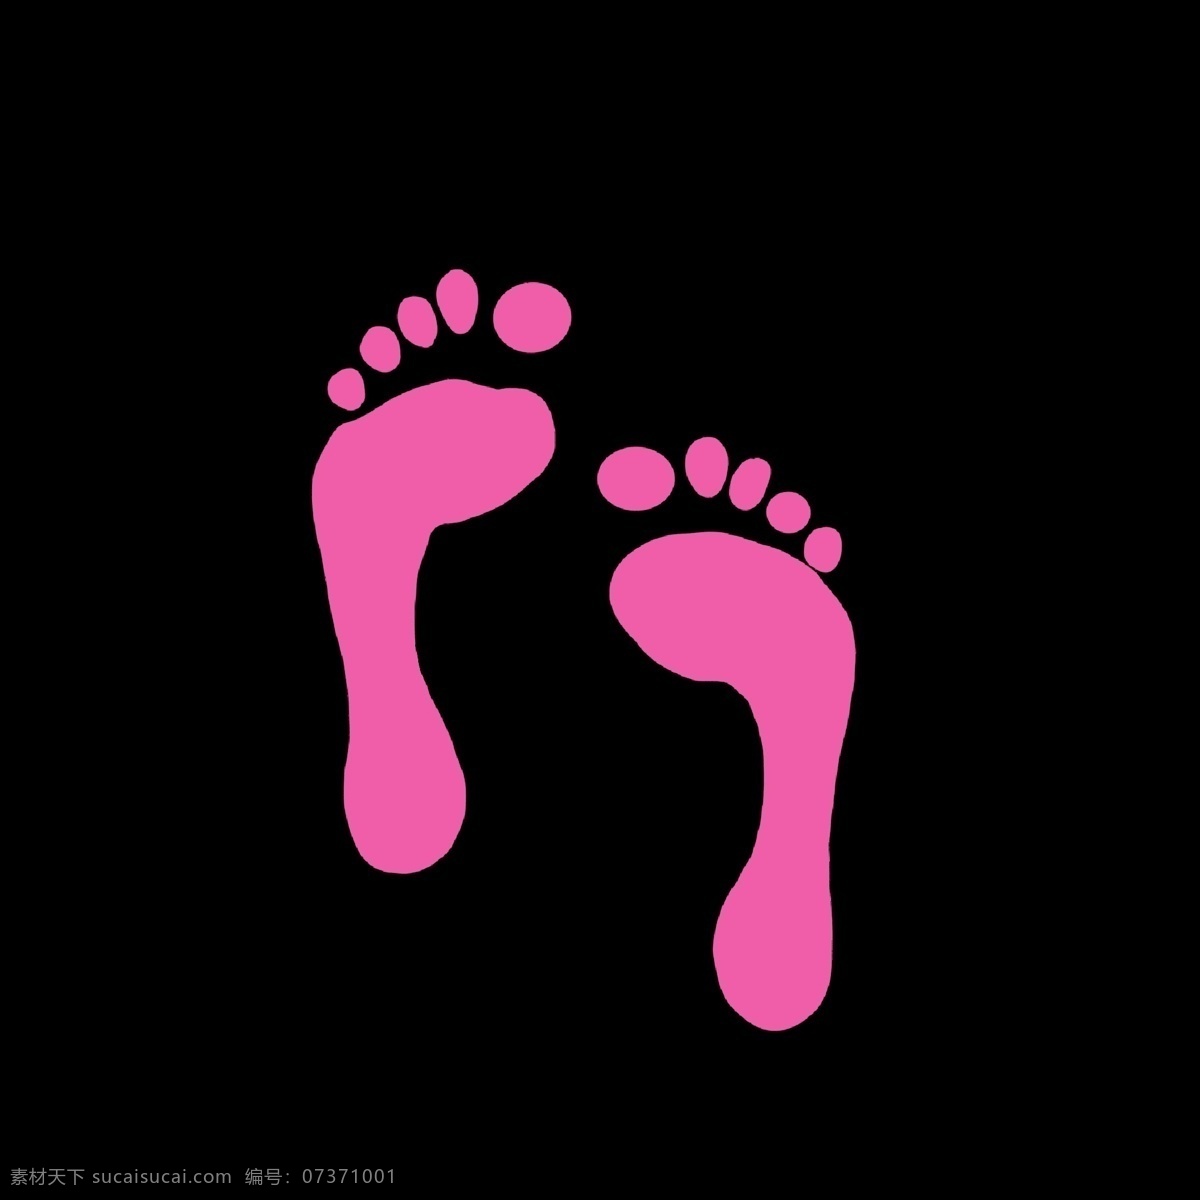 粉色 人物 形象 脚印 暖色 人类的脚印 痕迹 脚丫子 脚丫形状 卡通 简单 简约 简洁